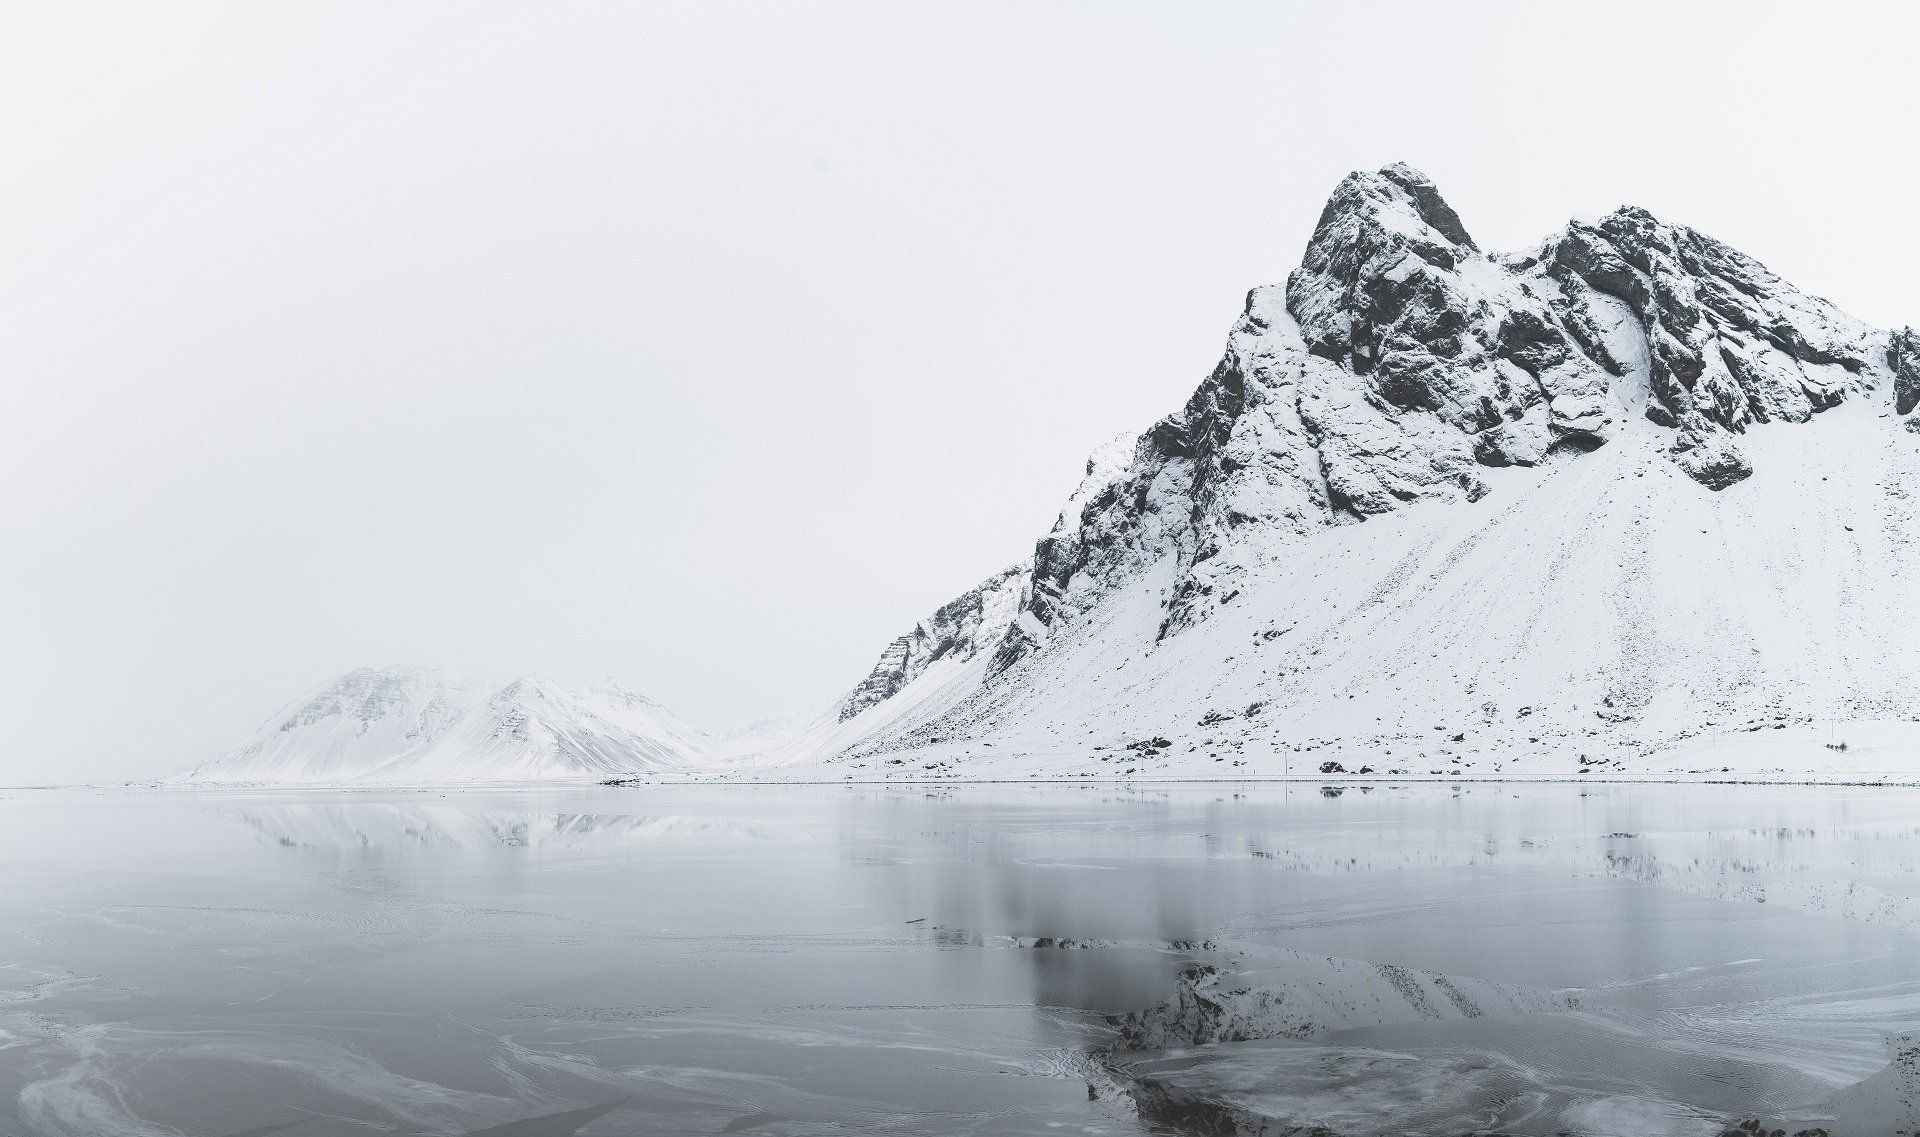 Stijl uit zee oprijzende bergen in de winter in IJsland